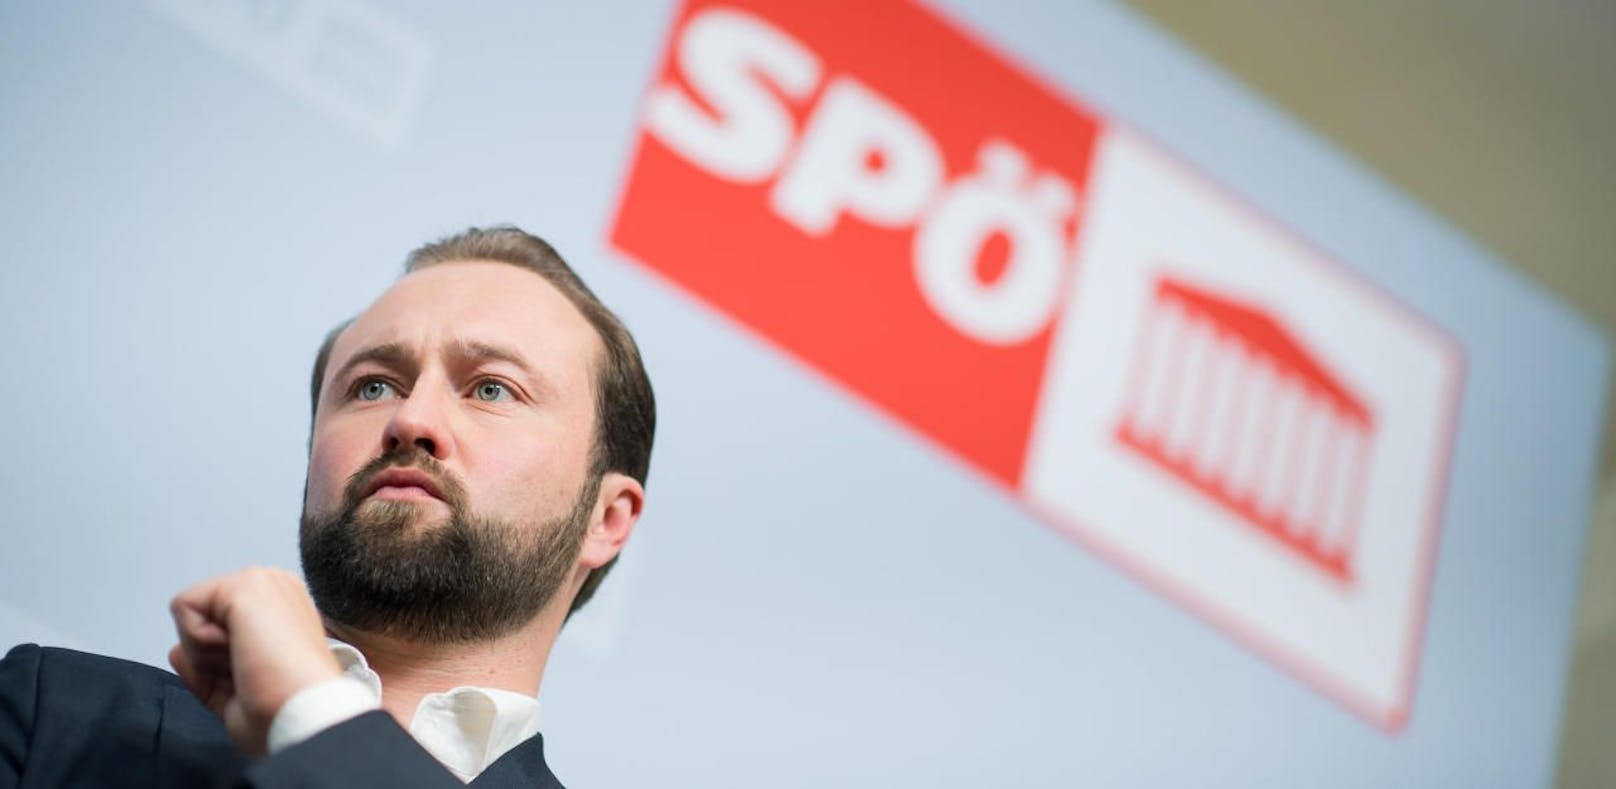 SPÖ-Chefin Rendi-Wagner der Intrige beschuldigt